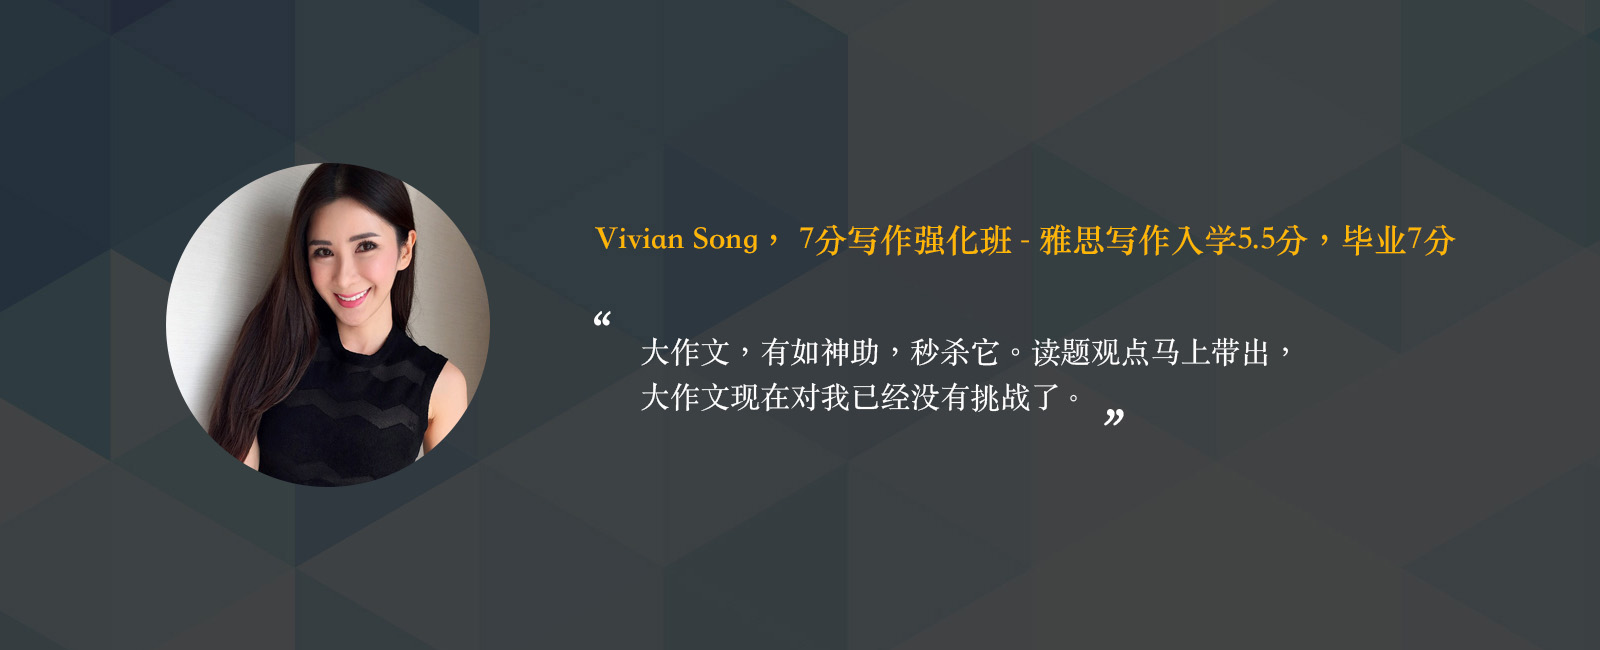 vivian-song-new